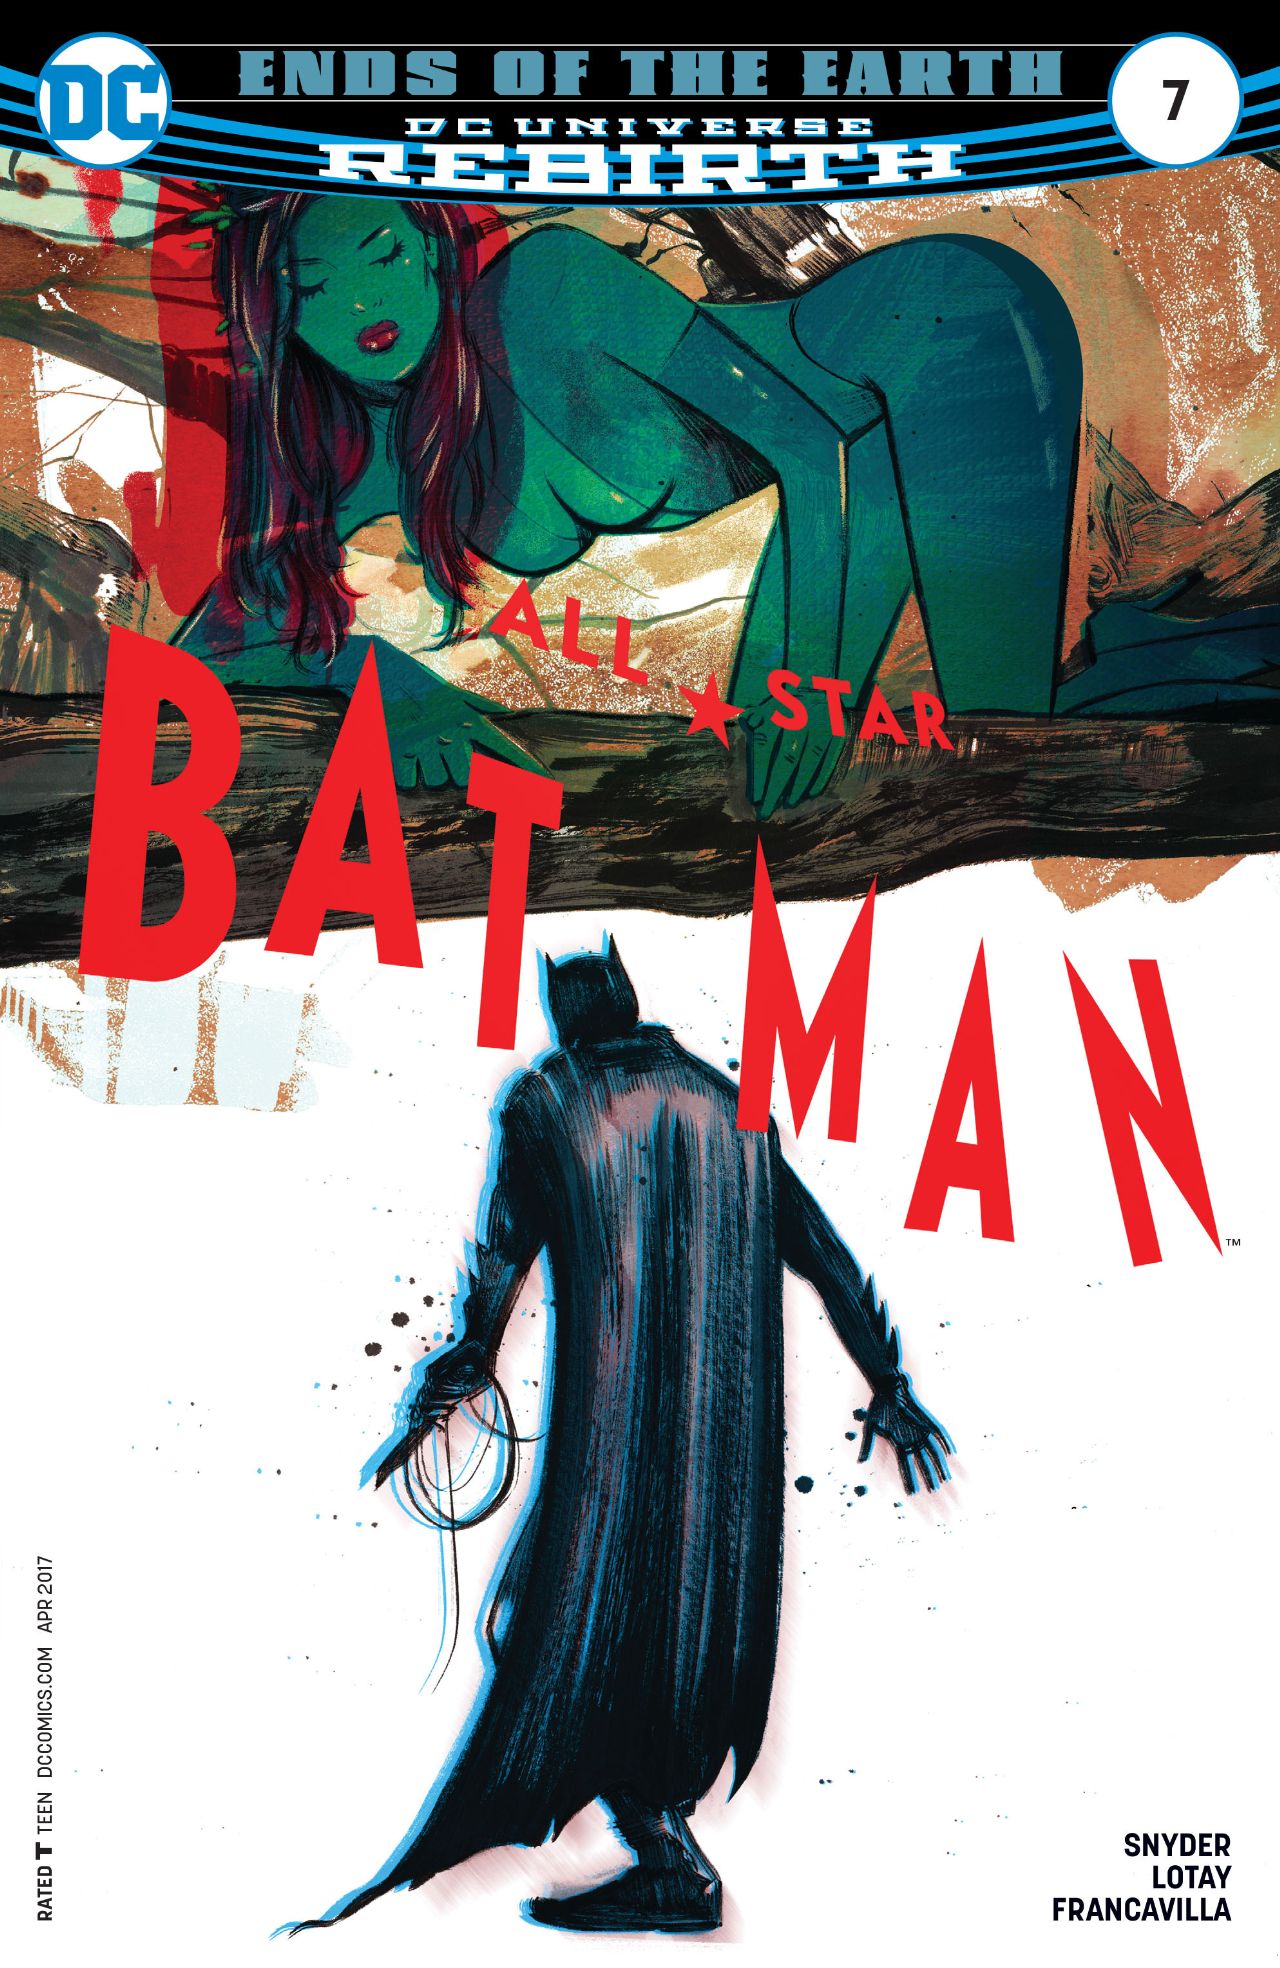 All-Star Batman Vol 1 7 | DC Database | Fandom